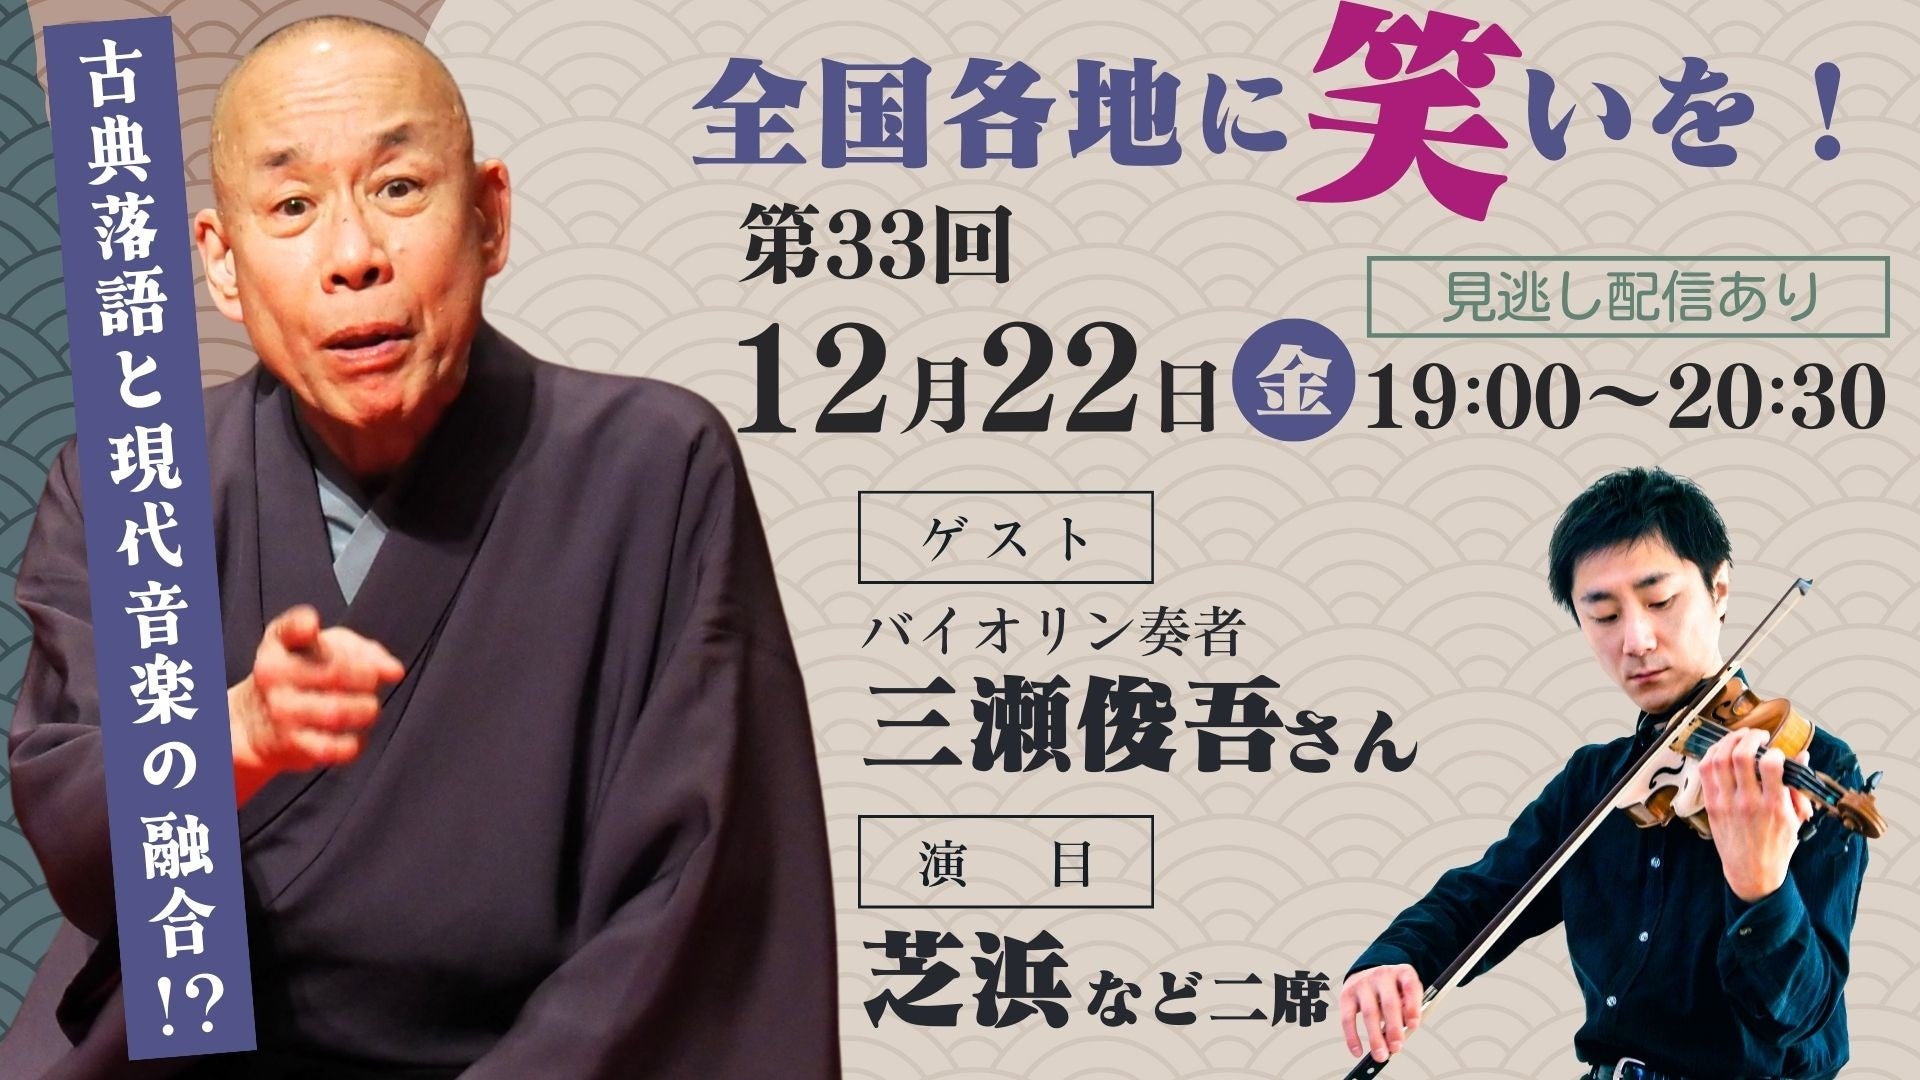 岐阜グランドホテル 「ハンドベル クリスマスコンサート」を開催します。